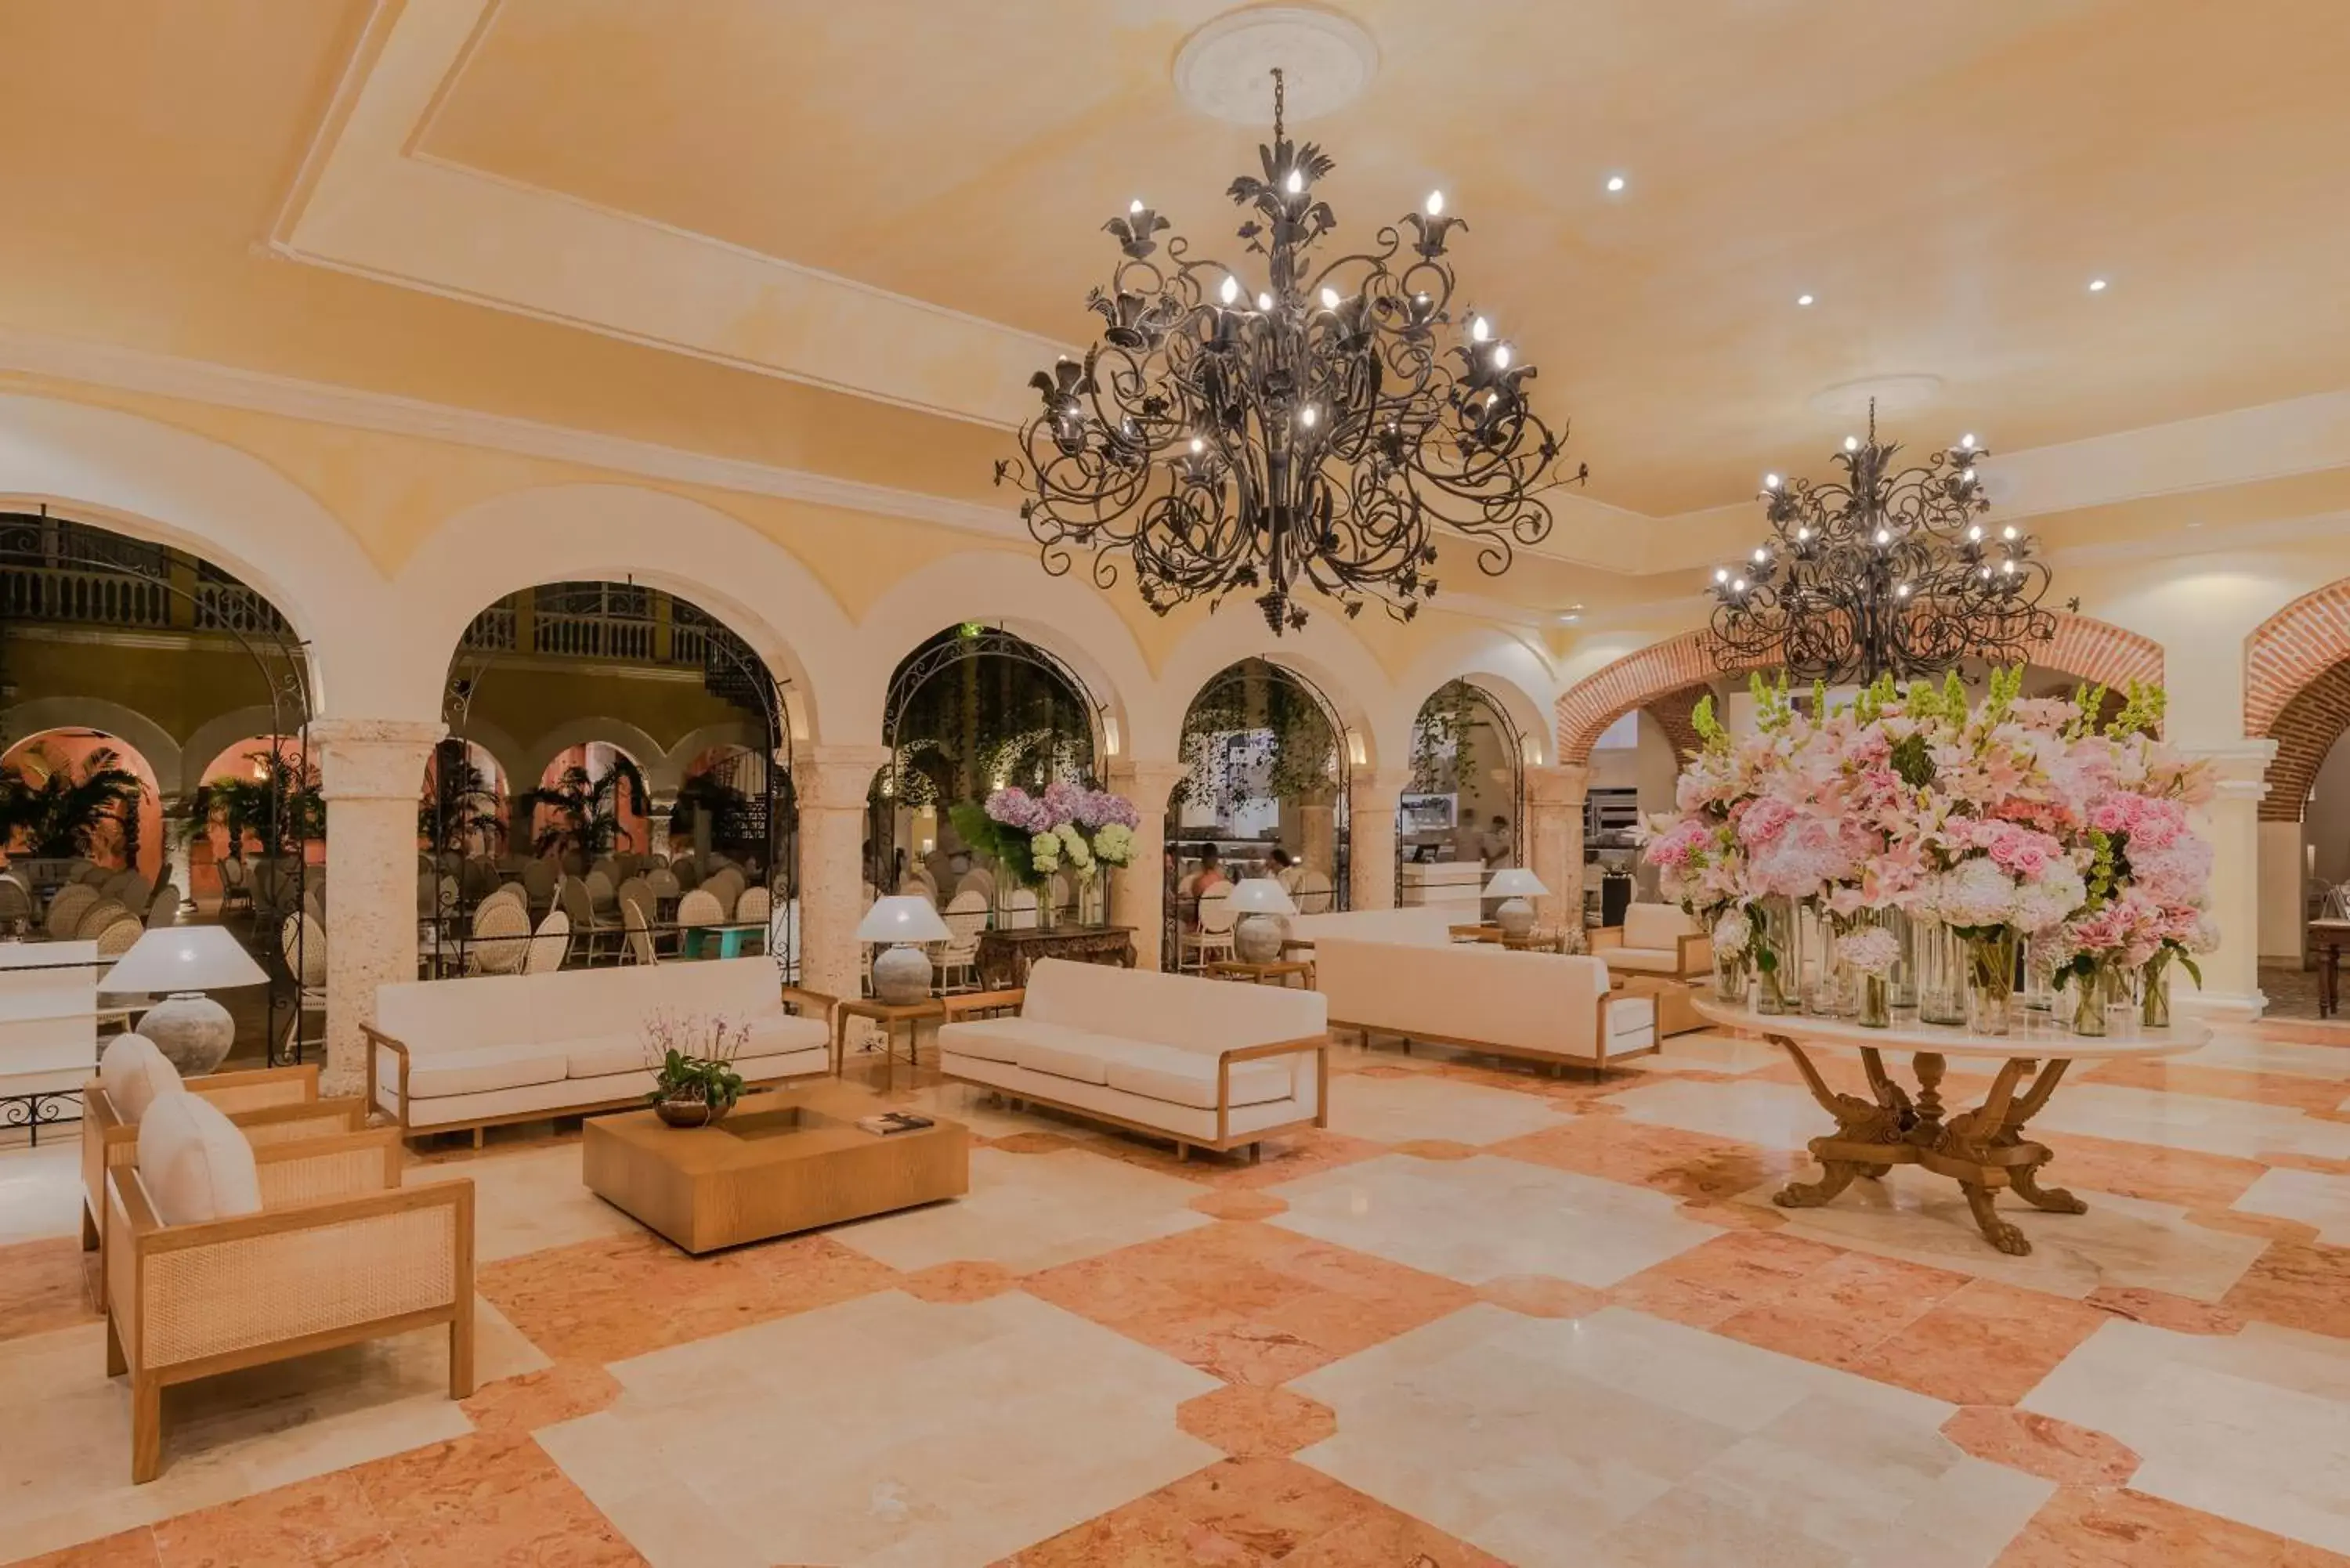 Lobby or reception, Lobby/Reception in Charleston Santa Teresa Cartagena